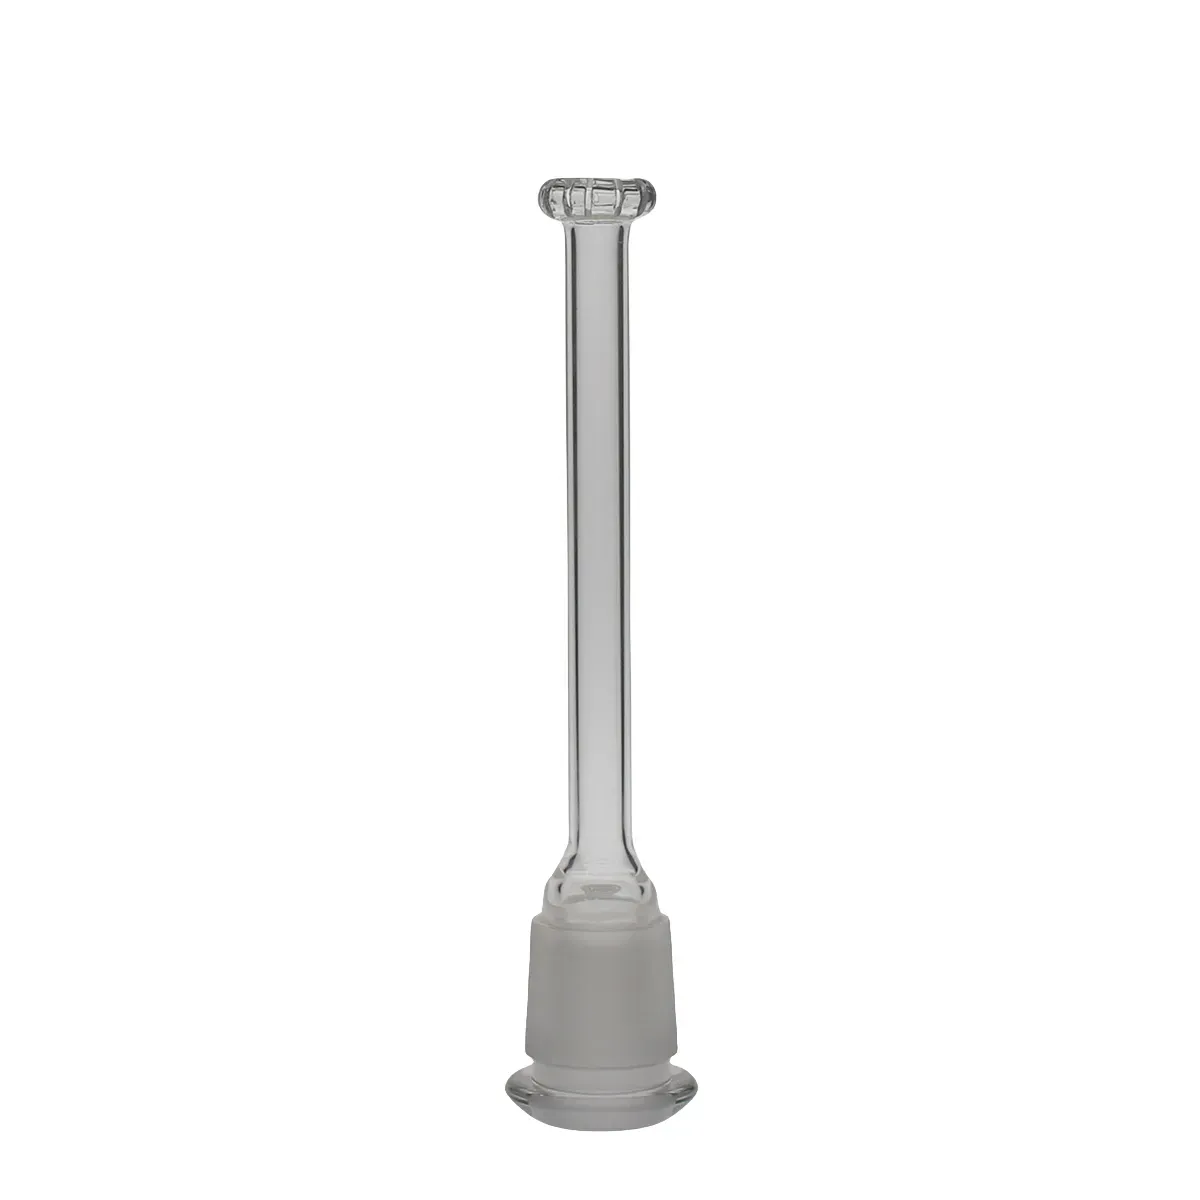 FC-MOD Stem Perk Hookahs Glass Headshow Percolator Smoking Water Bong Ash Catcher Joint size 28.8mm-18.8mm Mod-Perc